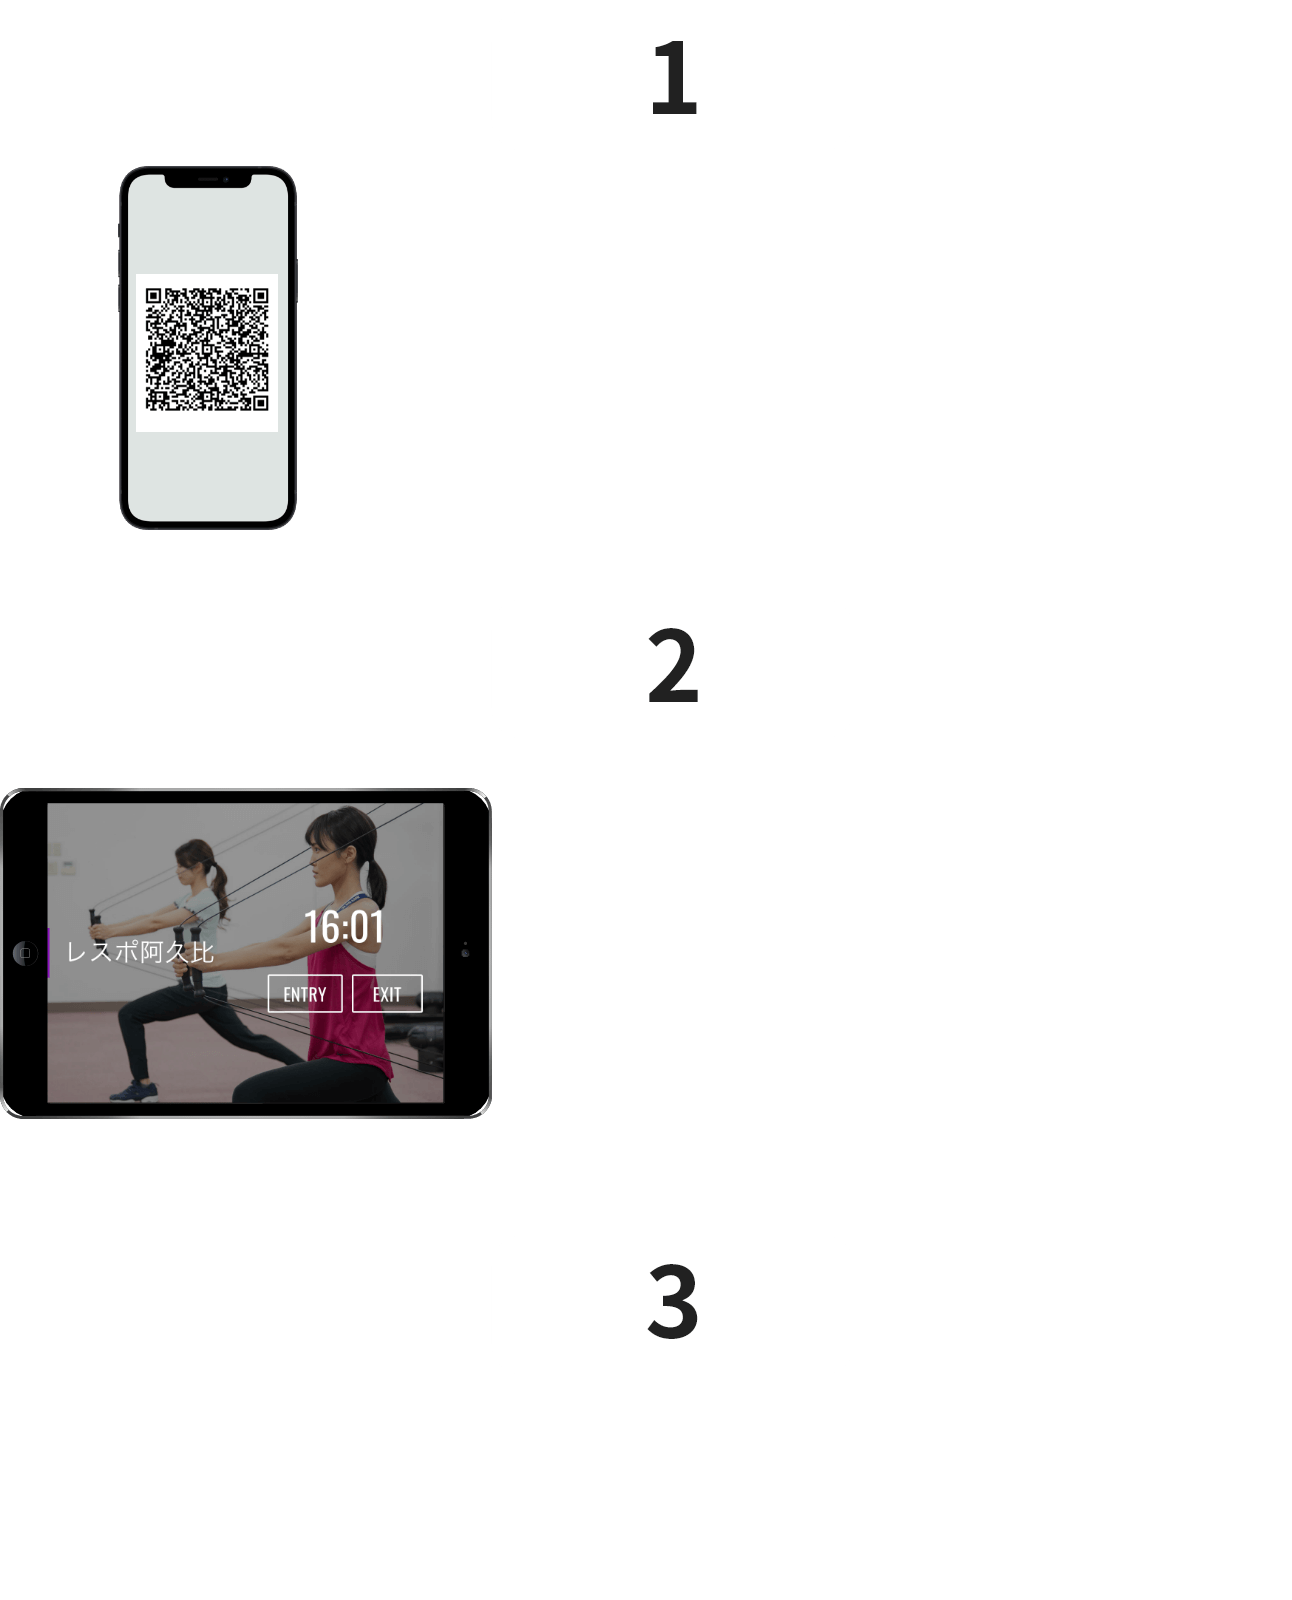 1 スマートフォンでQRコードを表示 2 受付にある端末で「ENTRY」ボタンをタップ 3 iPadのフロントカメラが起動するので、メンバーコードを読み取ります。